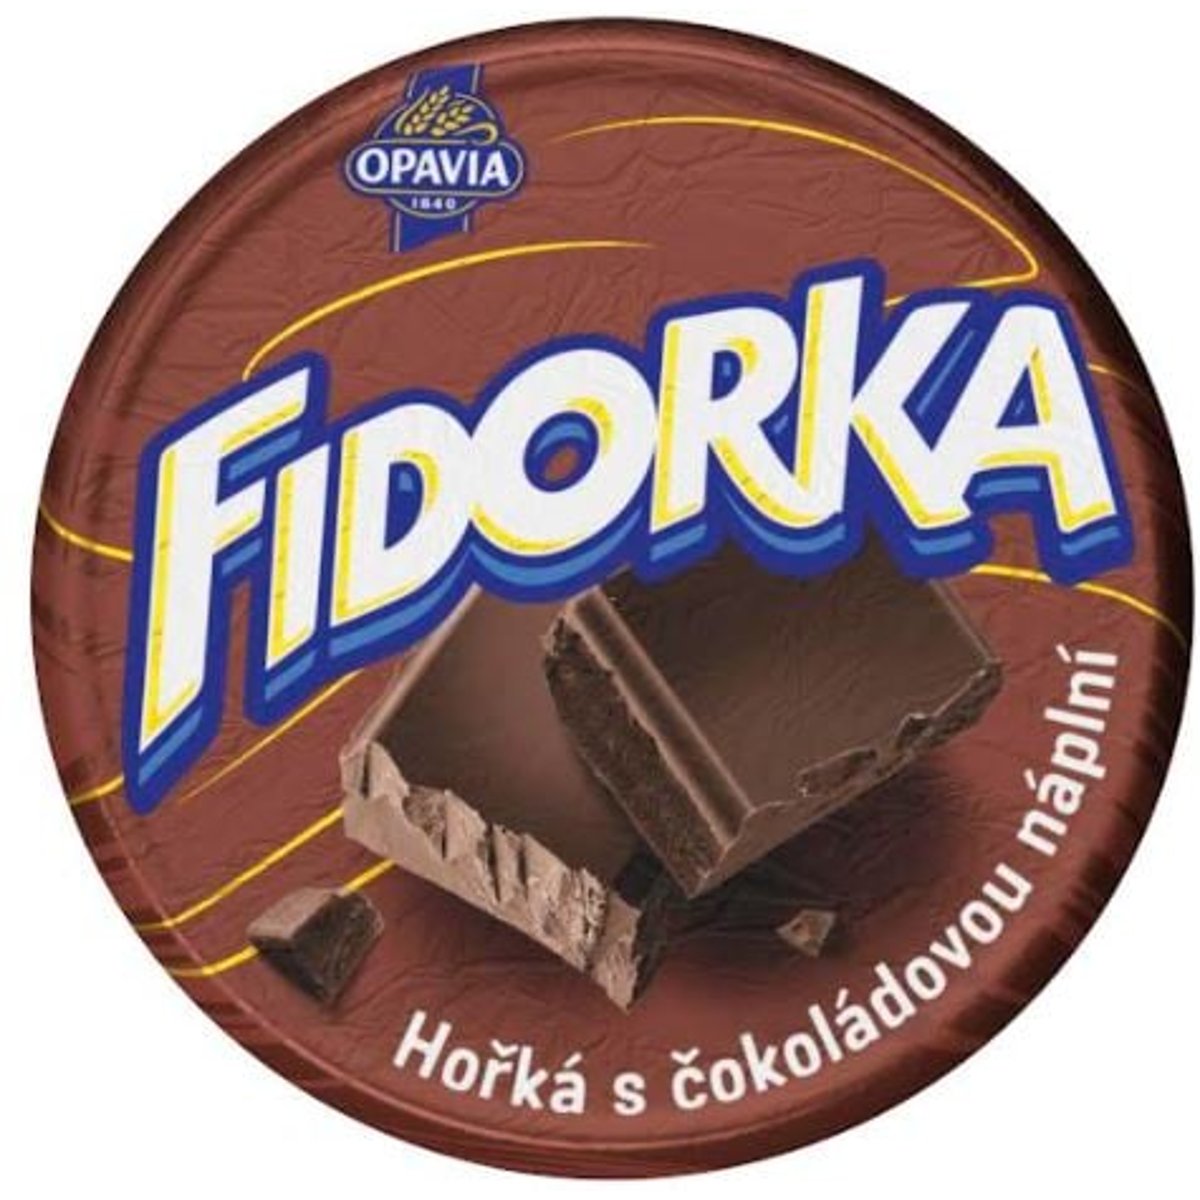 Opavia Fidorka Hořká s čokoládovou náplní hnědá